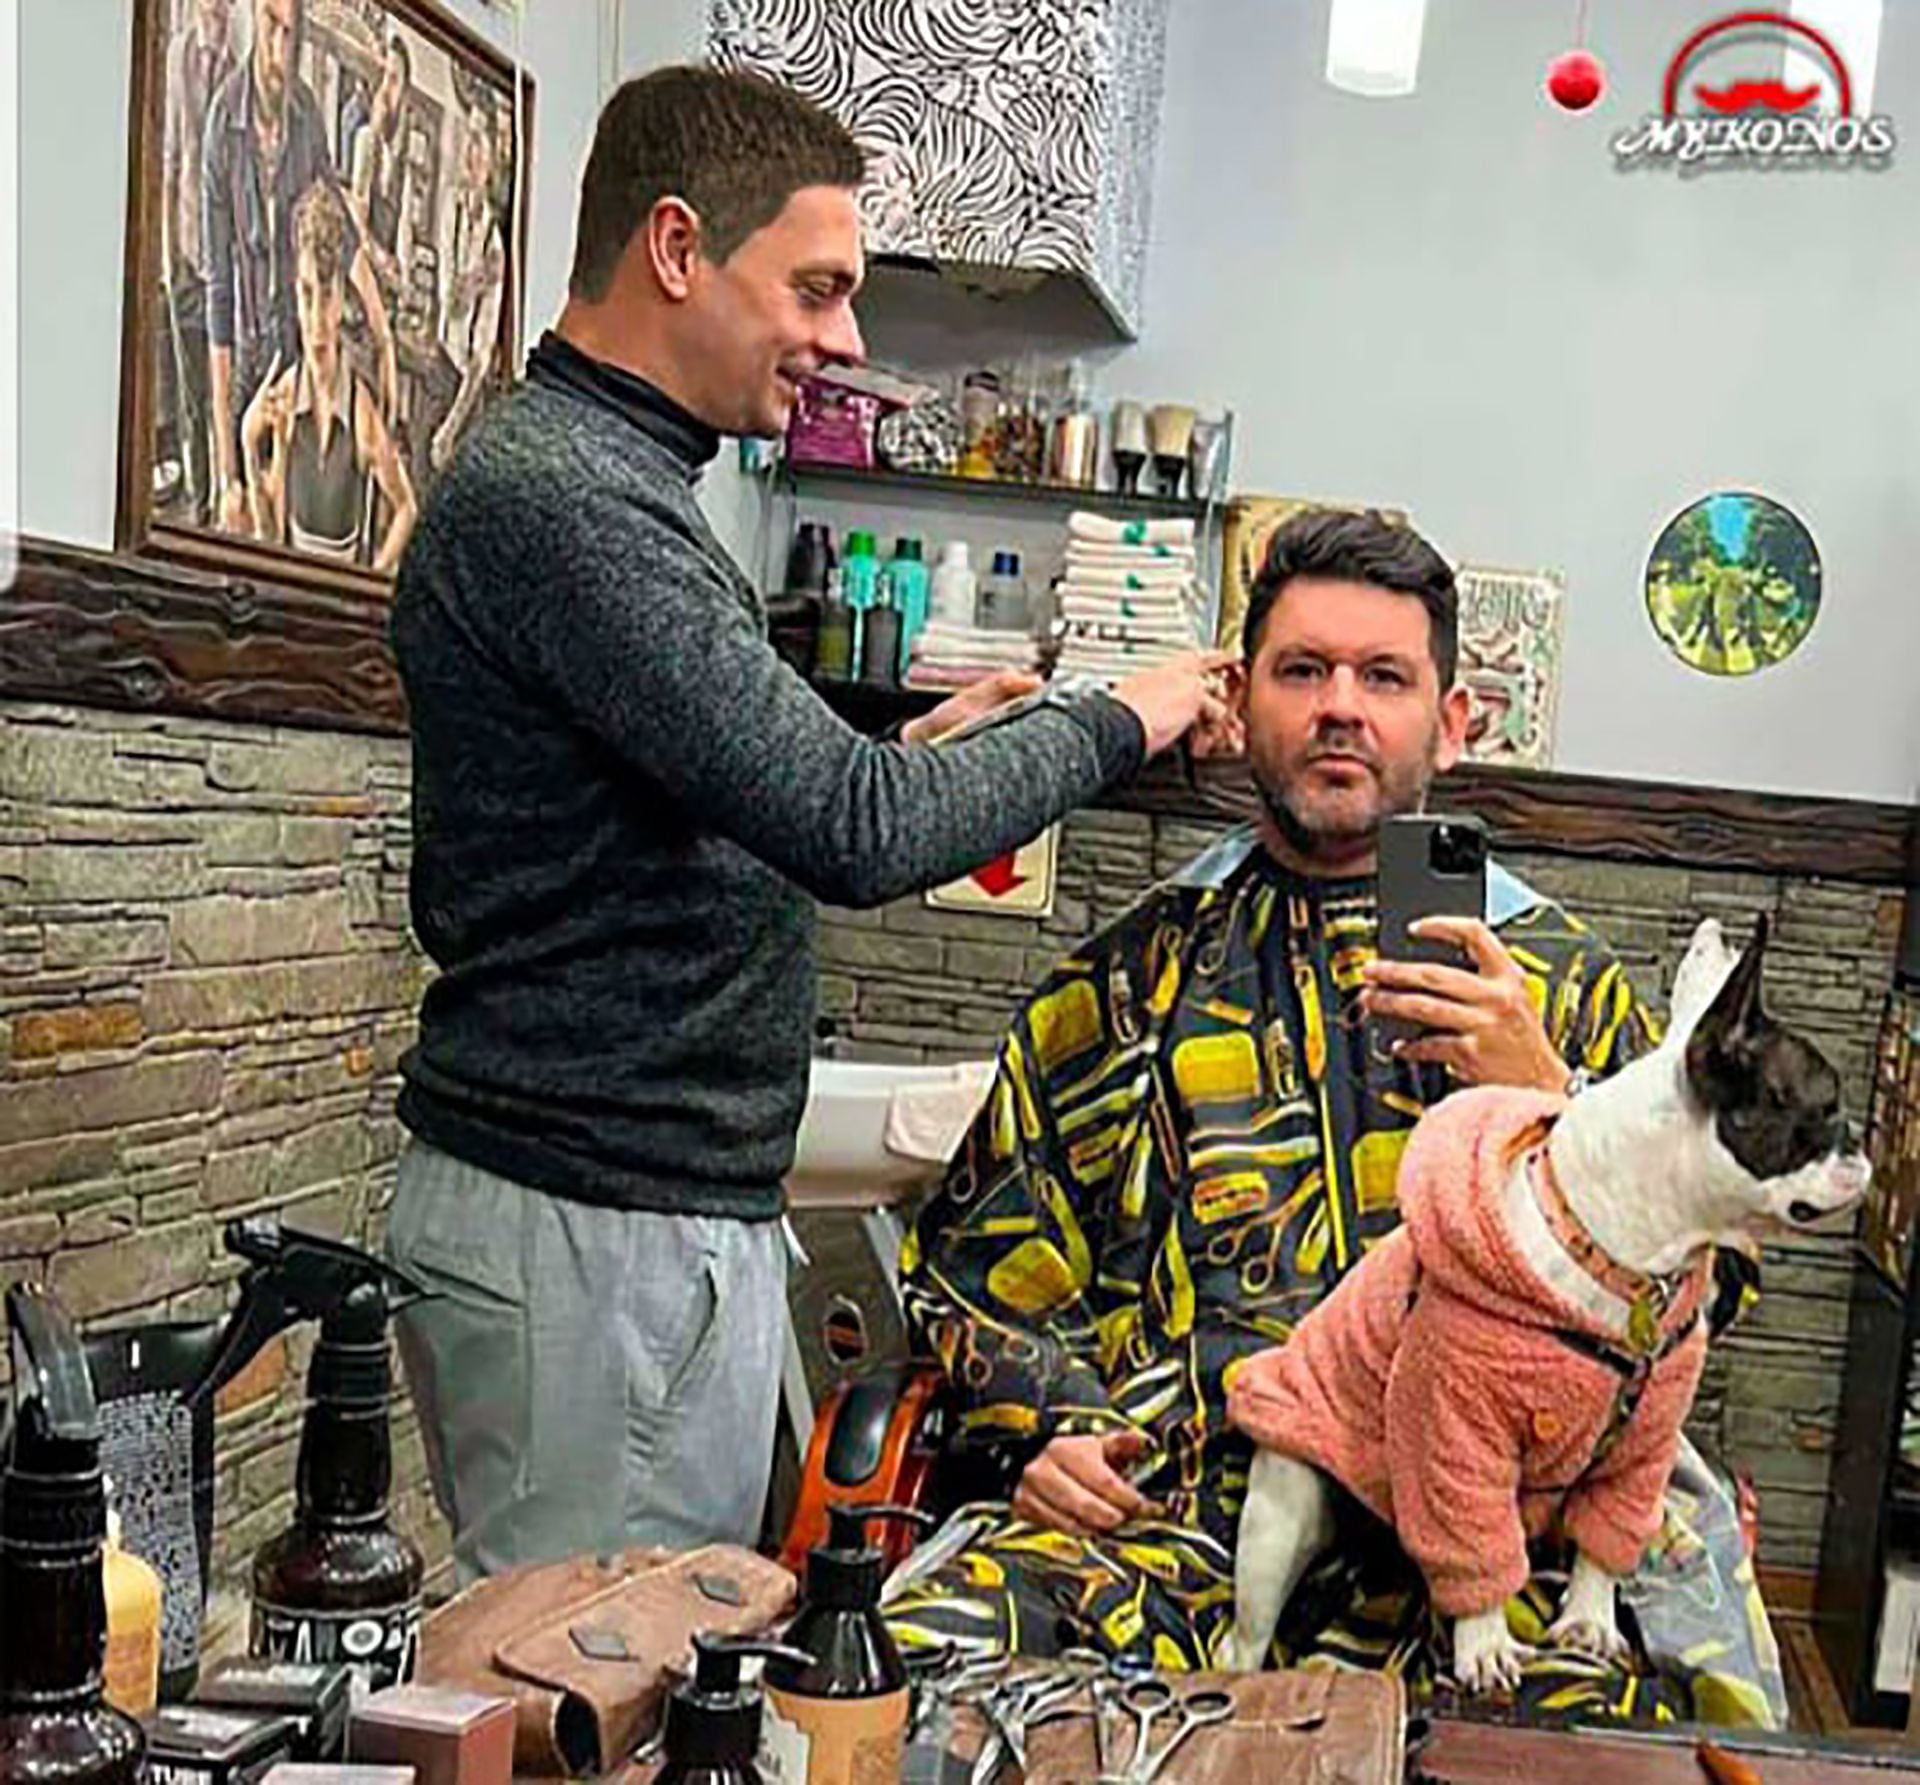 Martin Ortiz y Osvaldo Ozzan, en la peluqueria